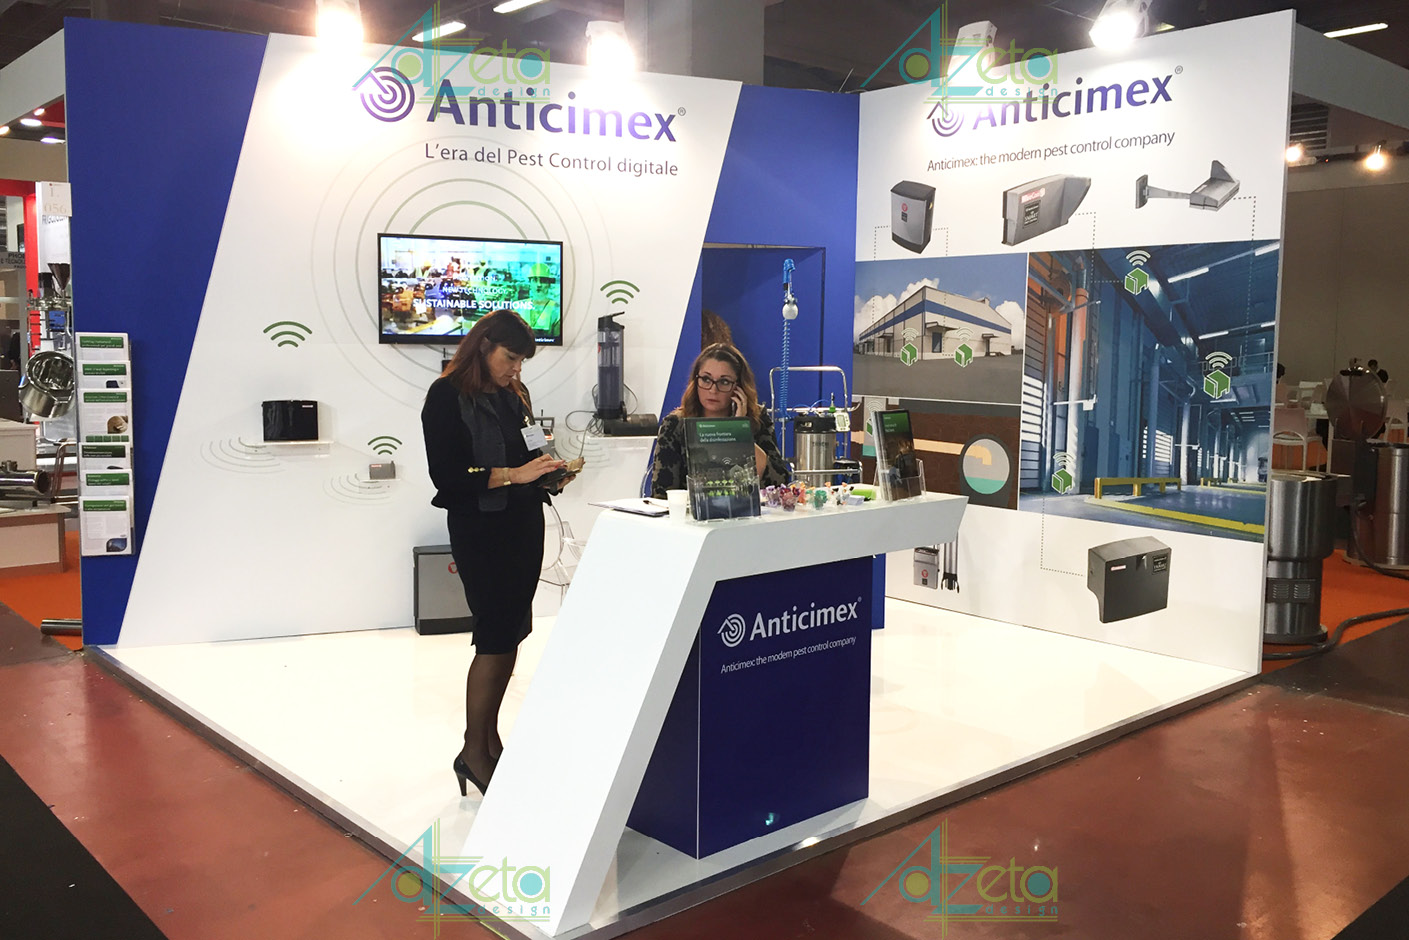 Anticimex 2016 - Parma - Stand di presentazione della azienda Yamato - designed by AzetaDesign